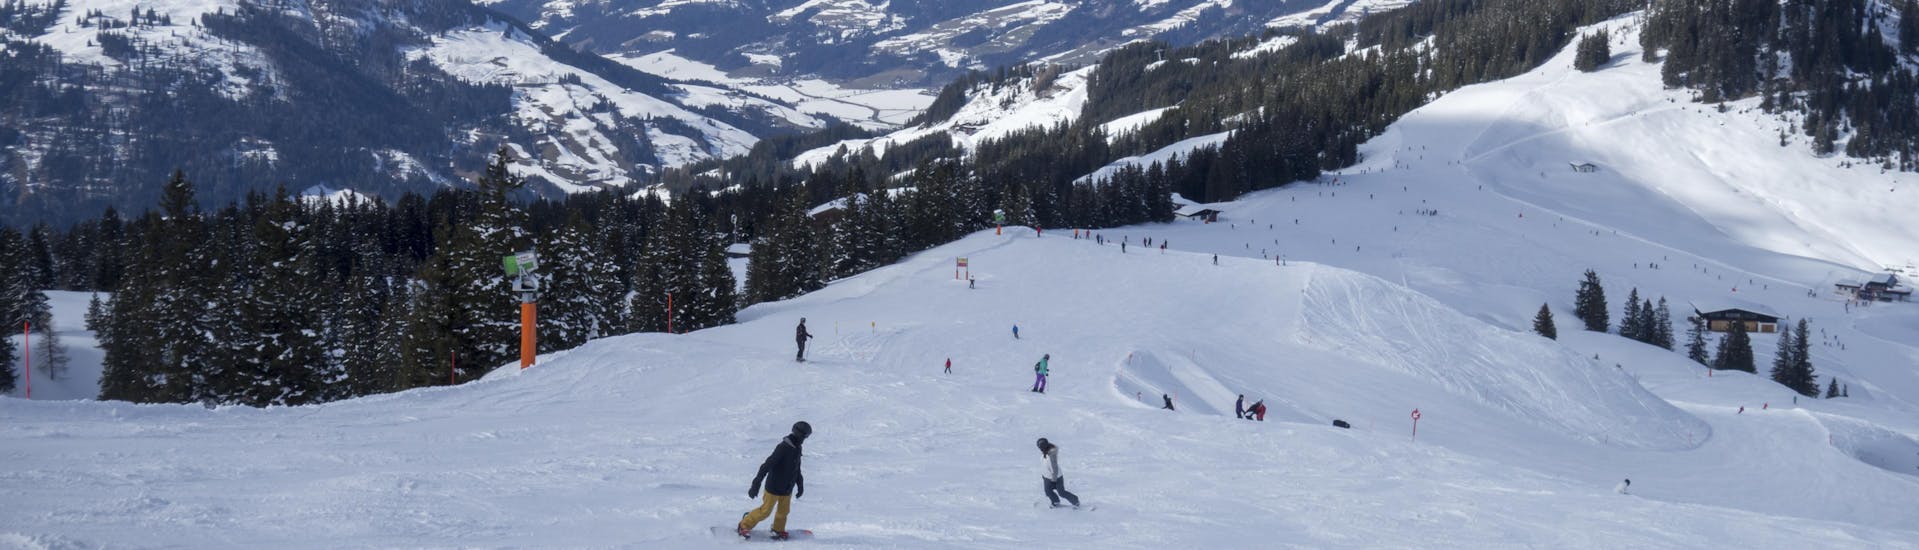 Adultes et enfants skiant dans la station de ski de Kirchberg.